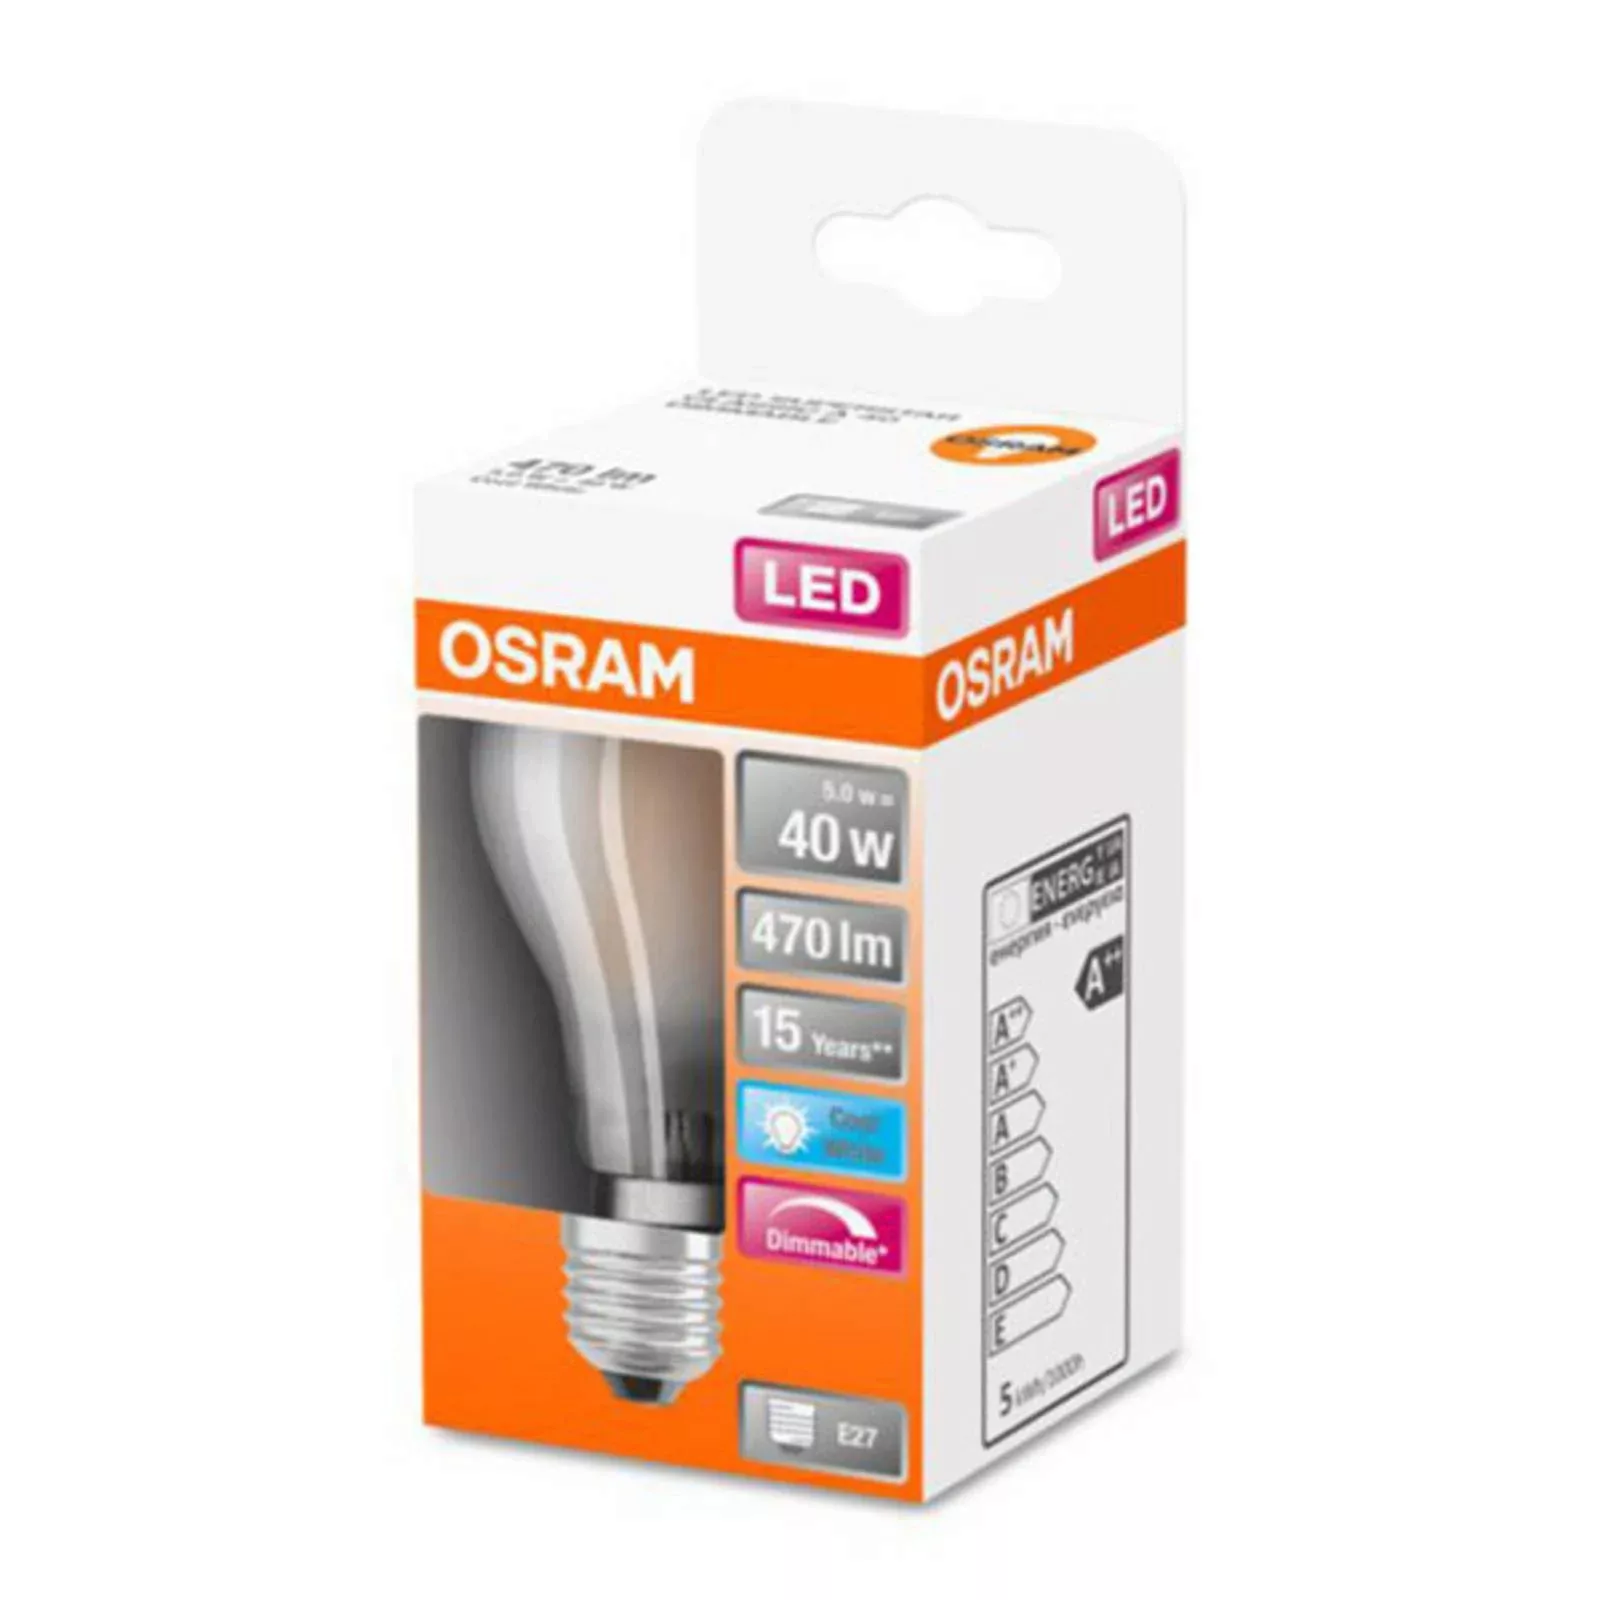 Osram LED Lampe ersetzt 40W E27 Birne - A60 in Weiß 4,8W 470lm 4000K dimmba günstig online kaufen